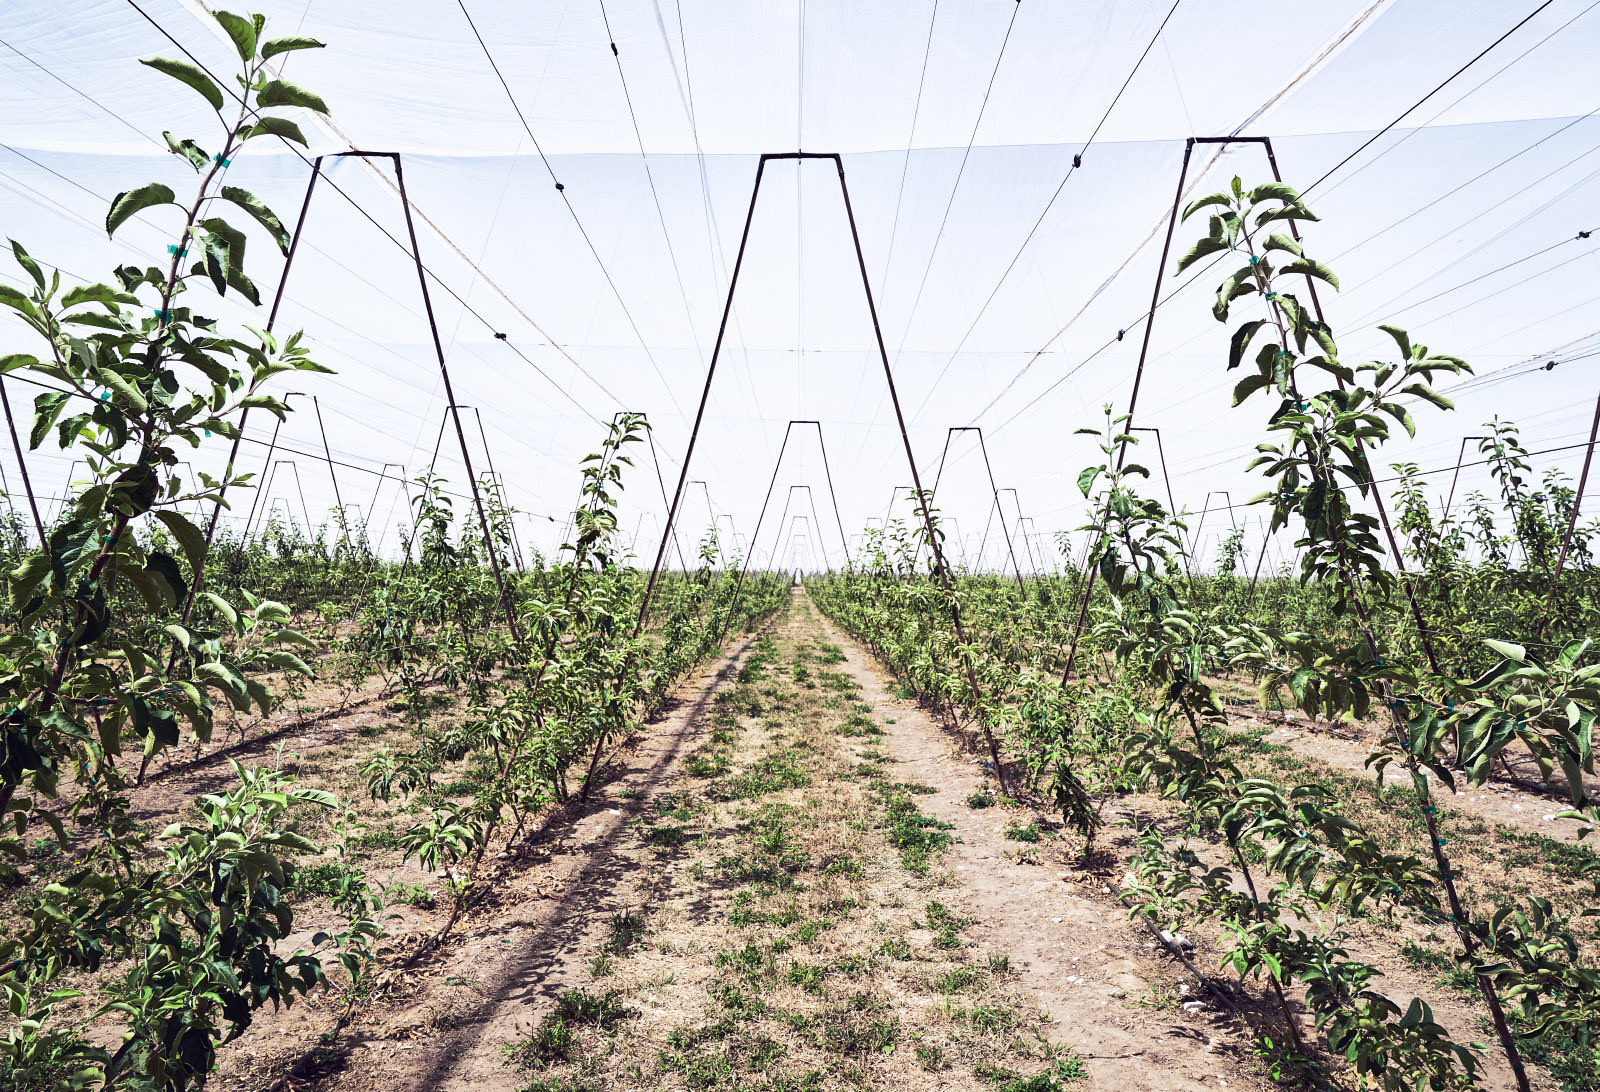 Weitwinkel Industrie Fotografie einer mit Planen abgedeckte Apfelplantage